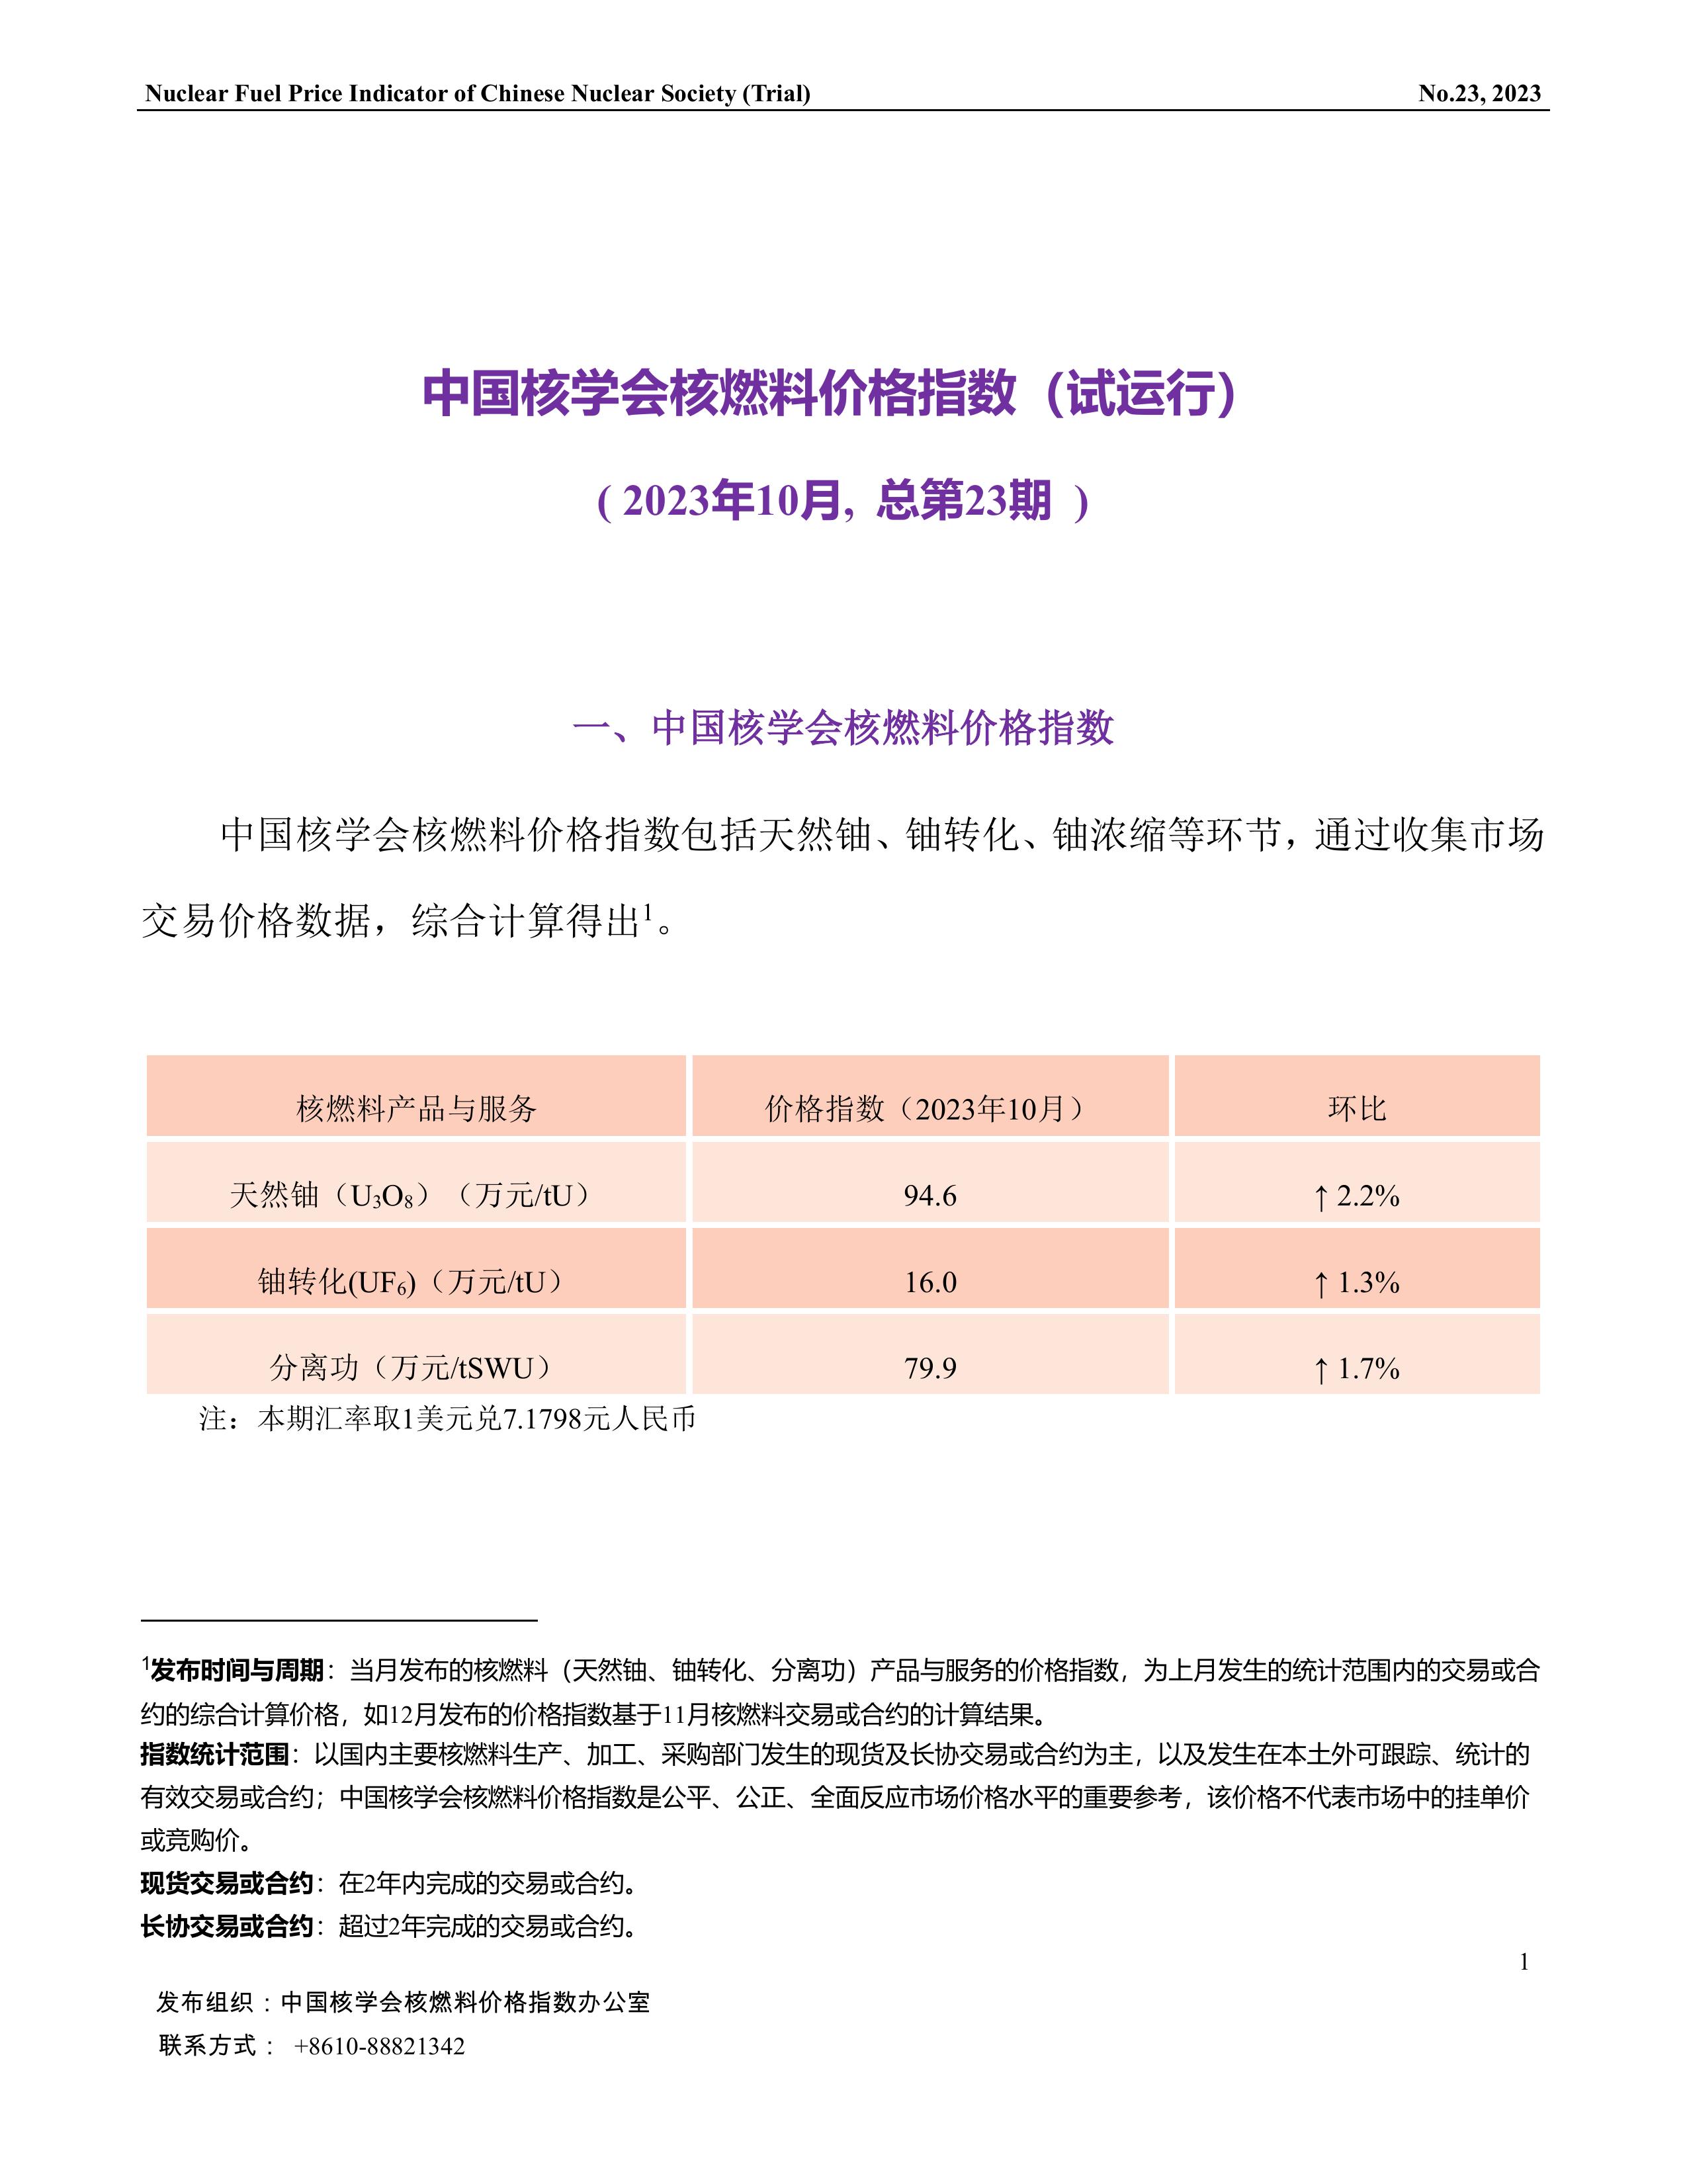 中国核学会核燃料价格指数(试运行)（2023年10月,总第23期）-CN_final-1.jpg